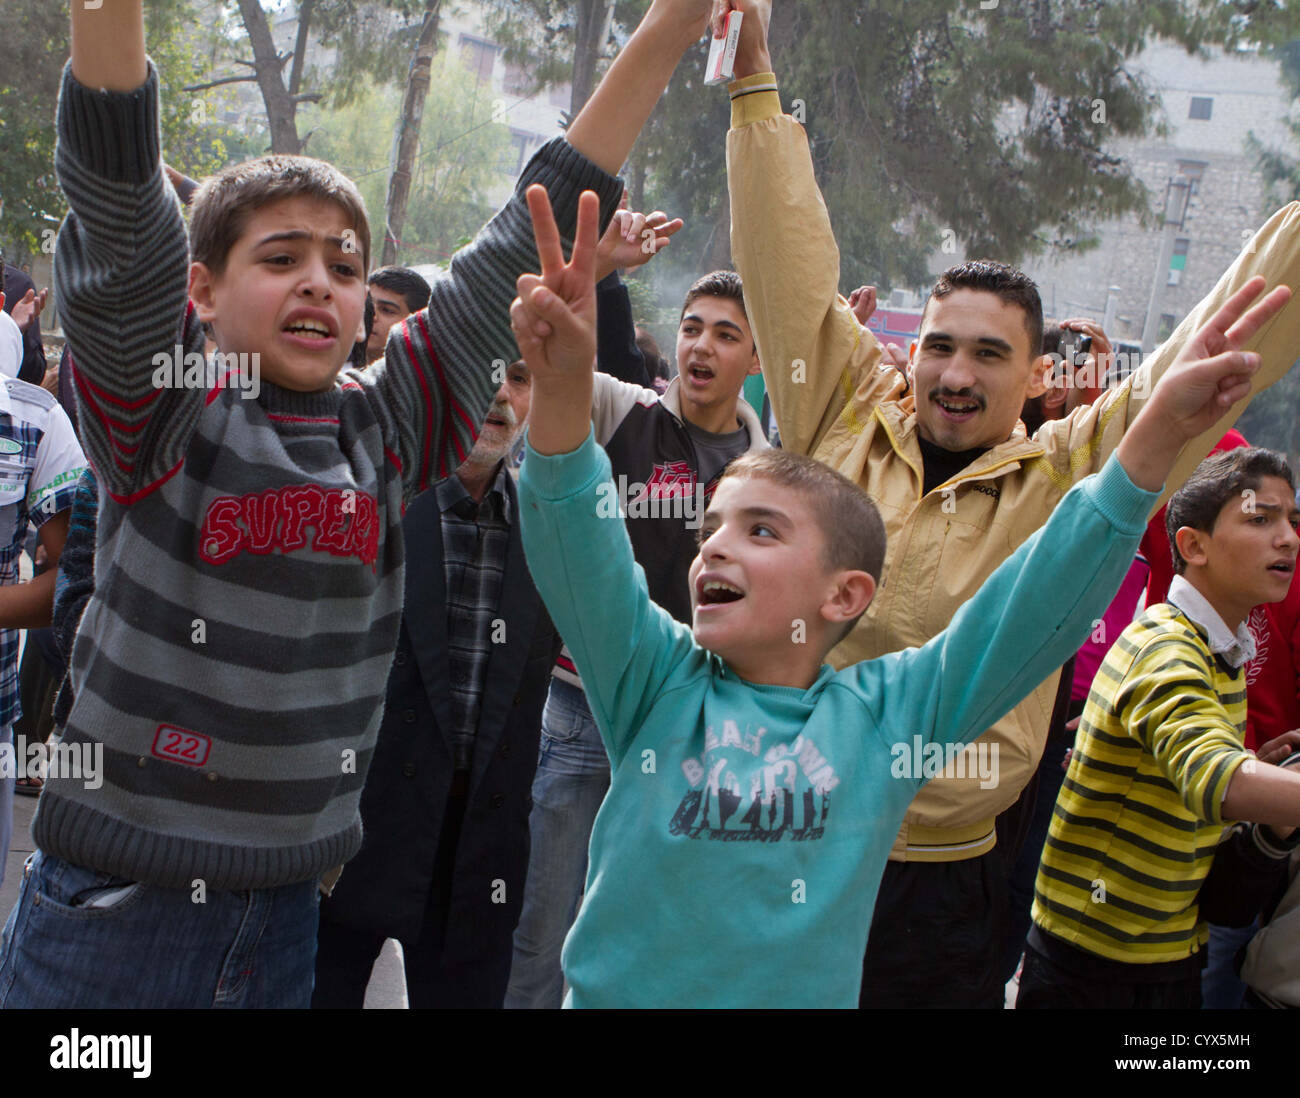 Le persone partecipano in un anti-Assad street protesta in Maade. Libero esercito siriano degli elementi provvisti di protezione e sostegno. Foto Stock